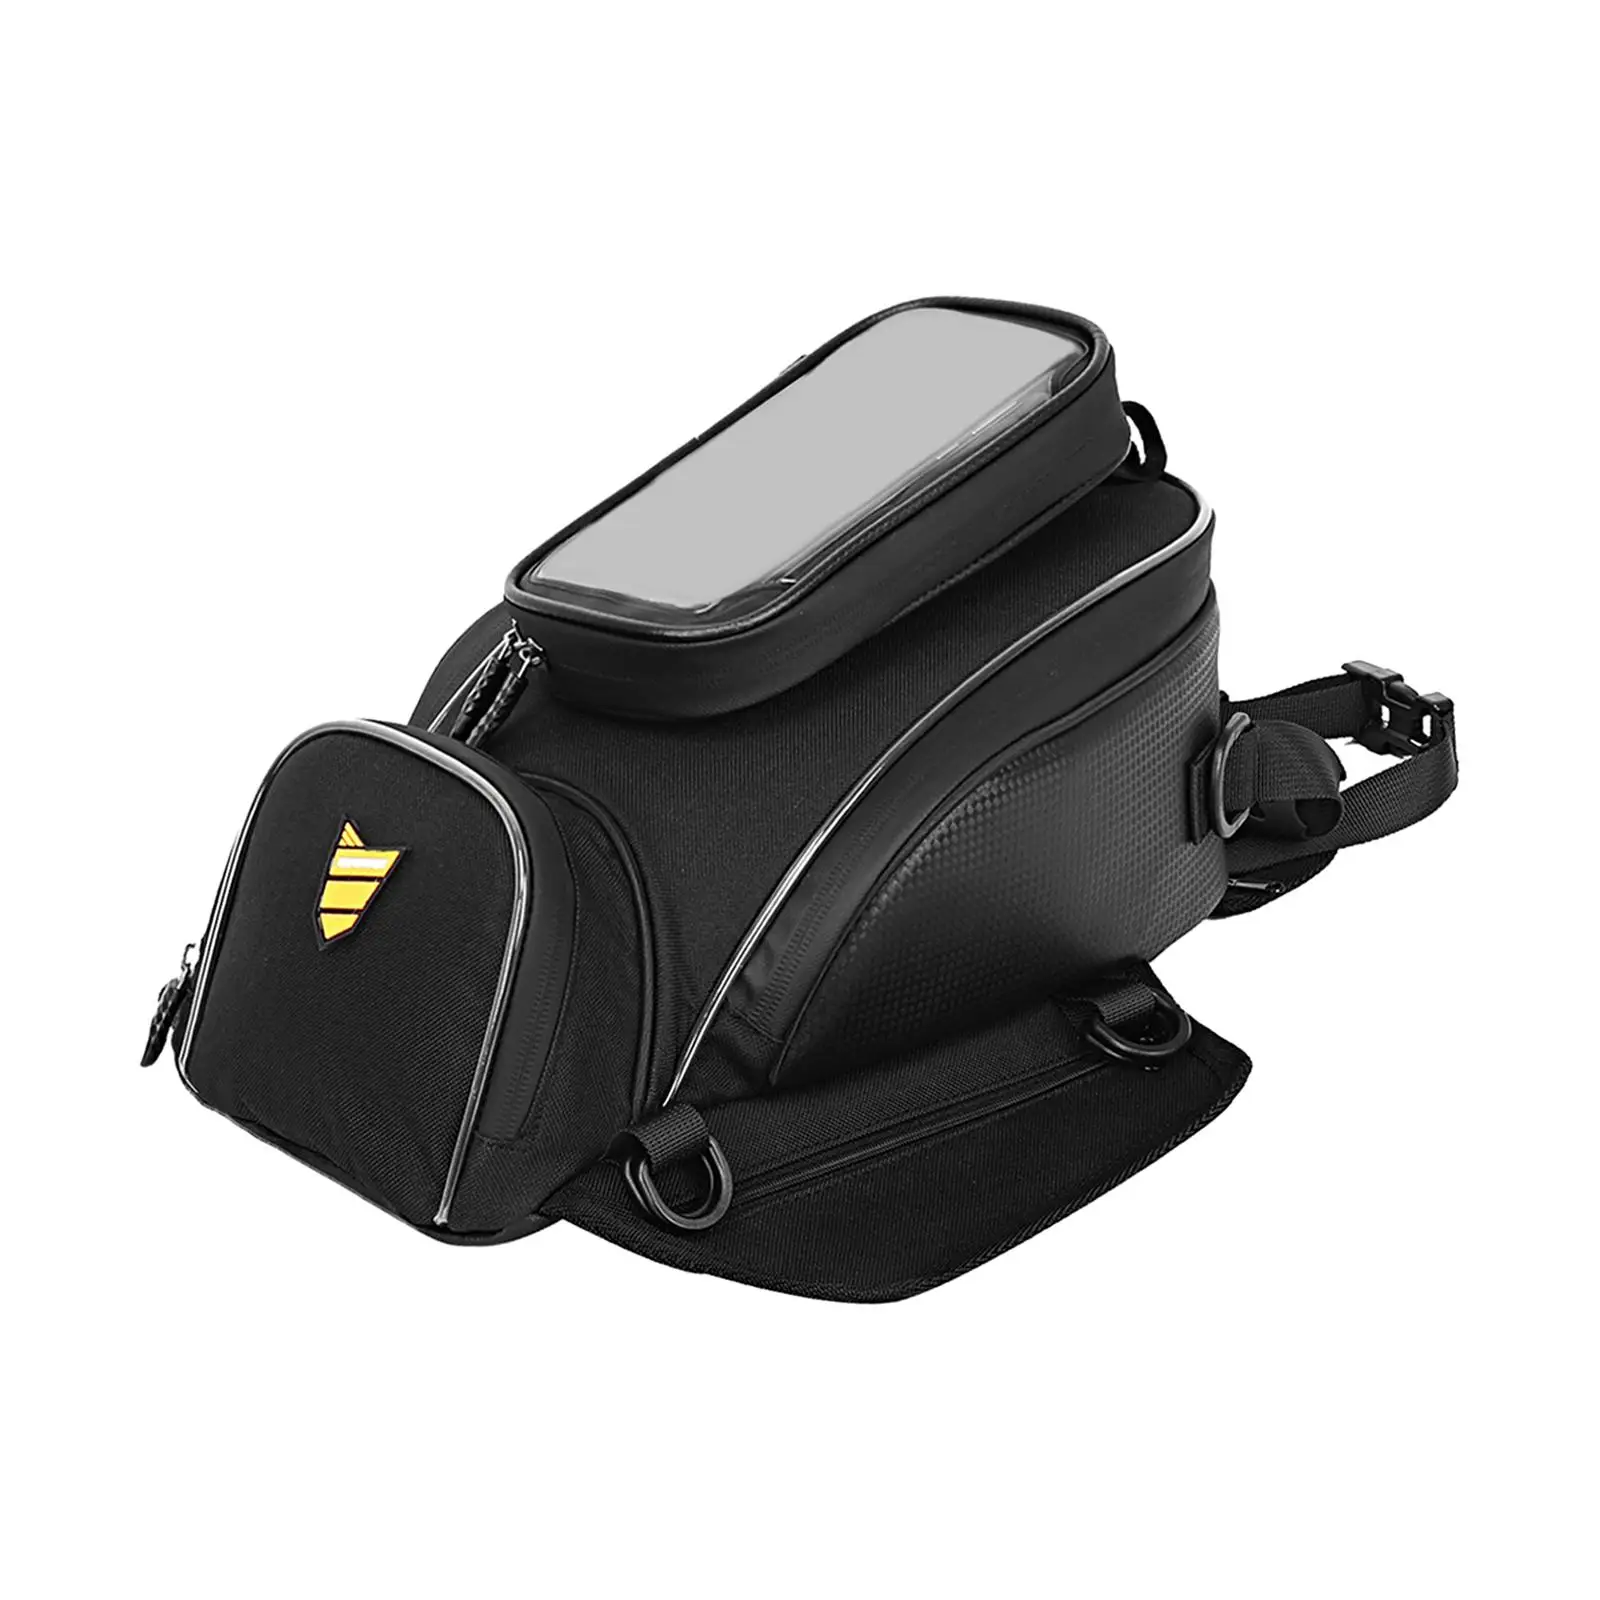 Motorcycle Phone Navigation Tank Storage Bag Waterproof Portable Durable